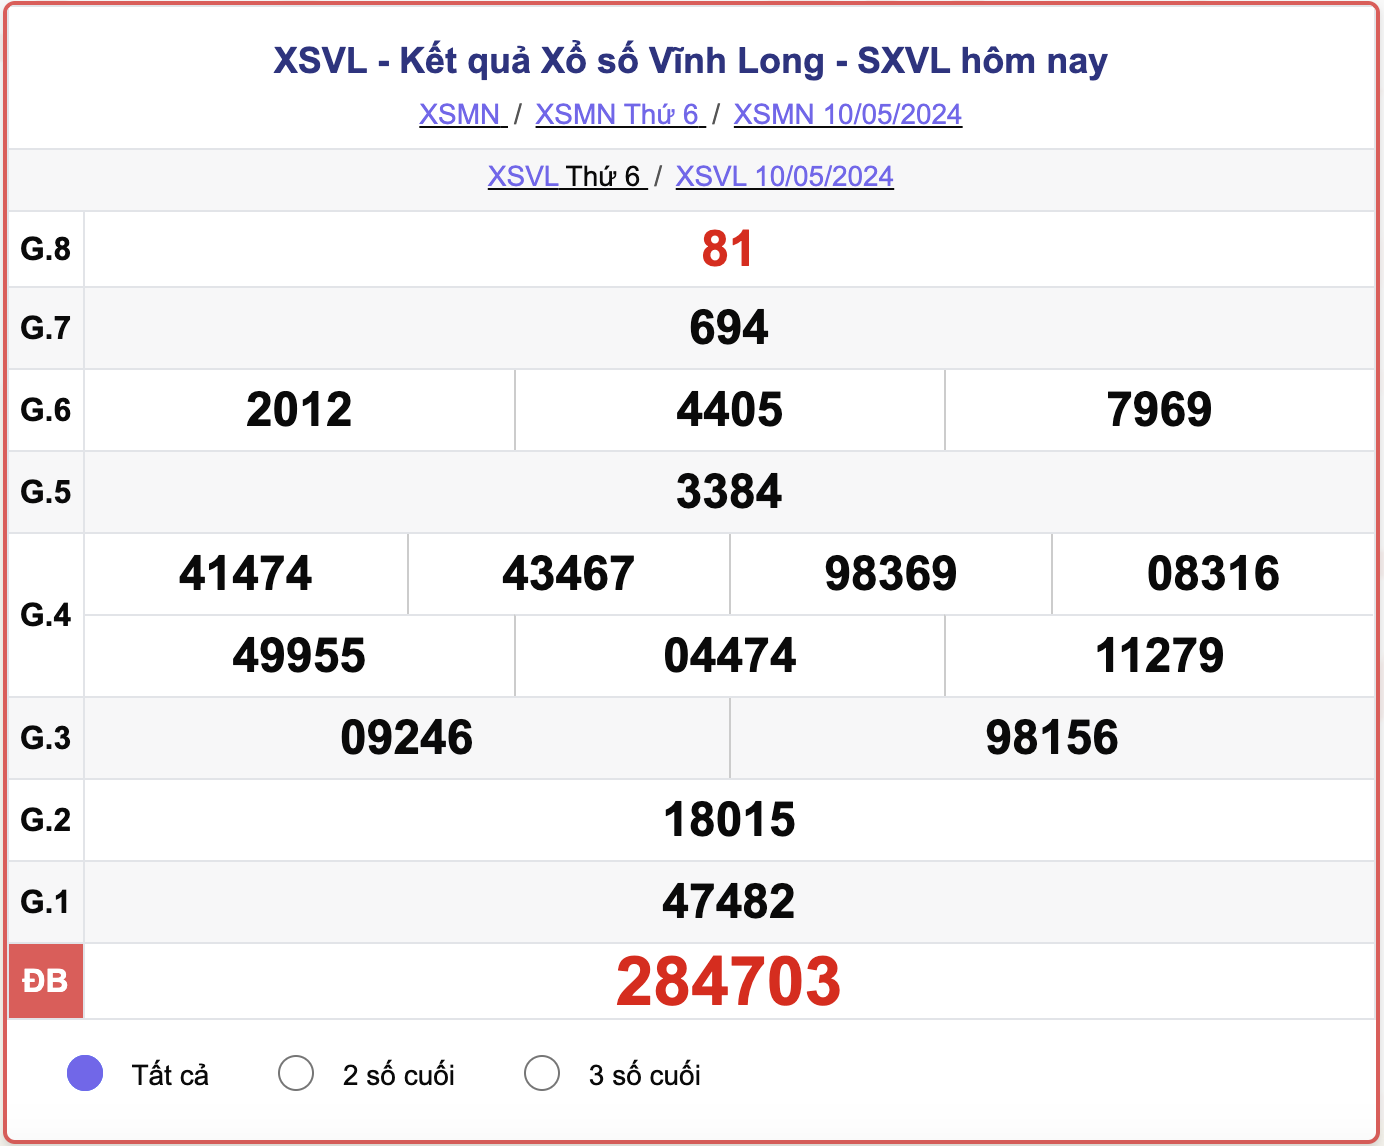 XSVL thứ Sáu, kết quả xổ số Vĩnh Long ngày 10/5/2024.